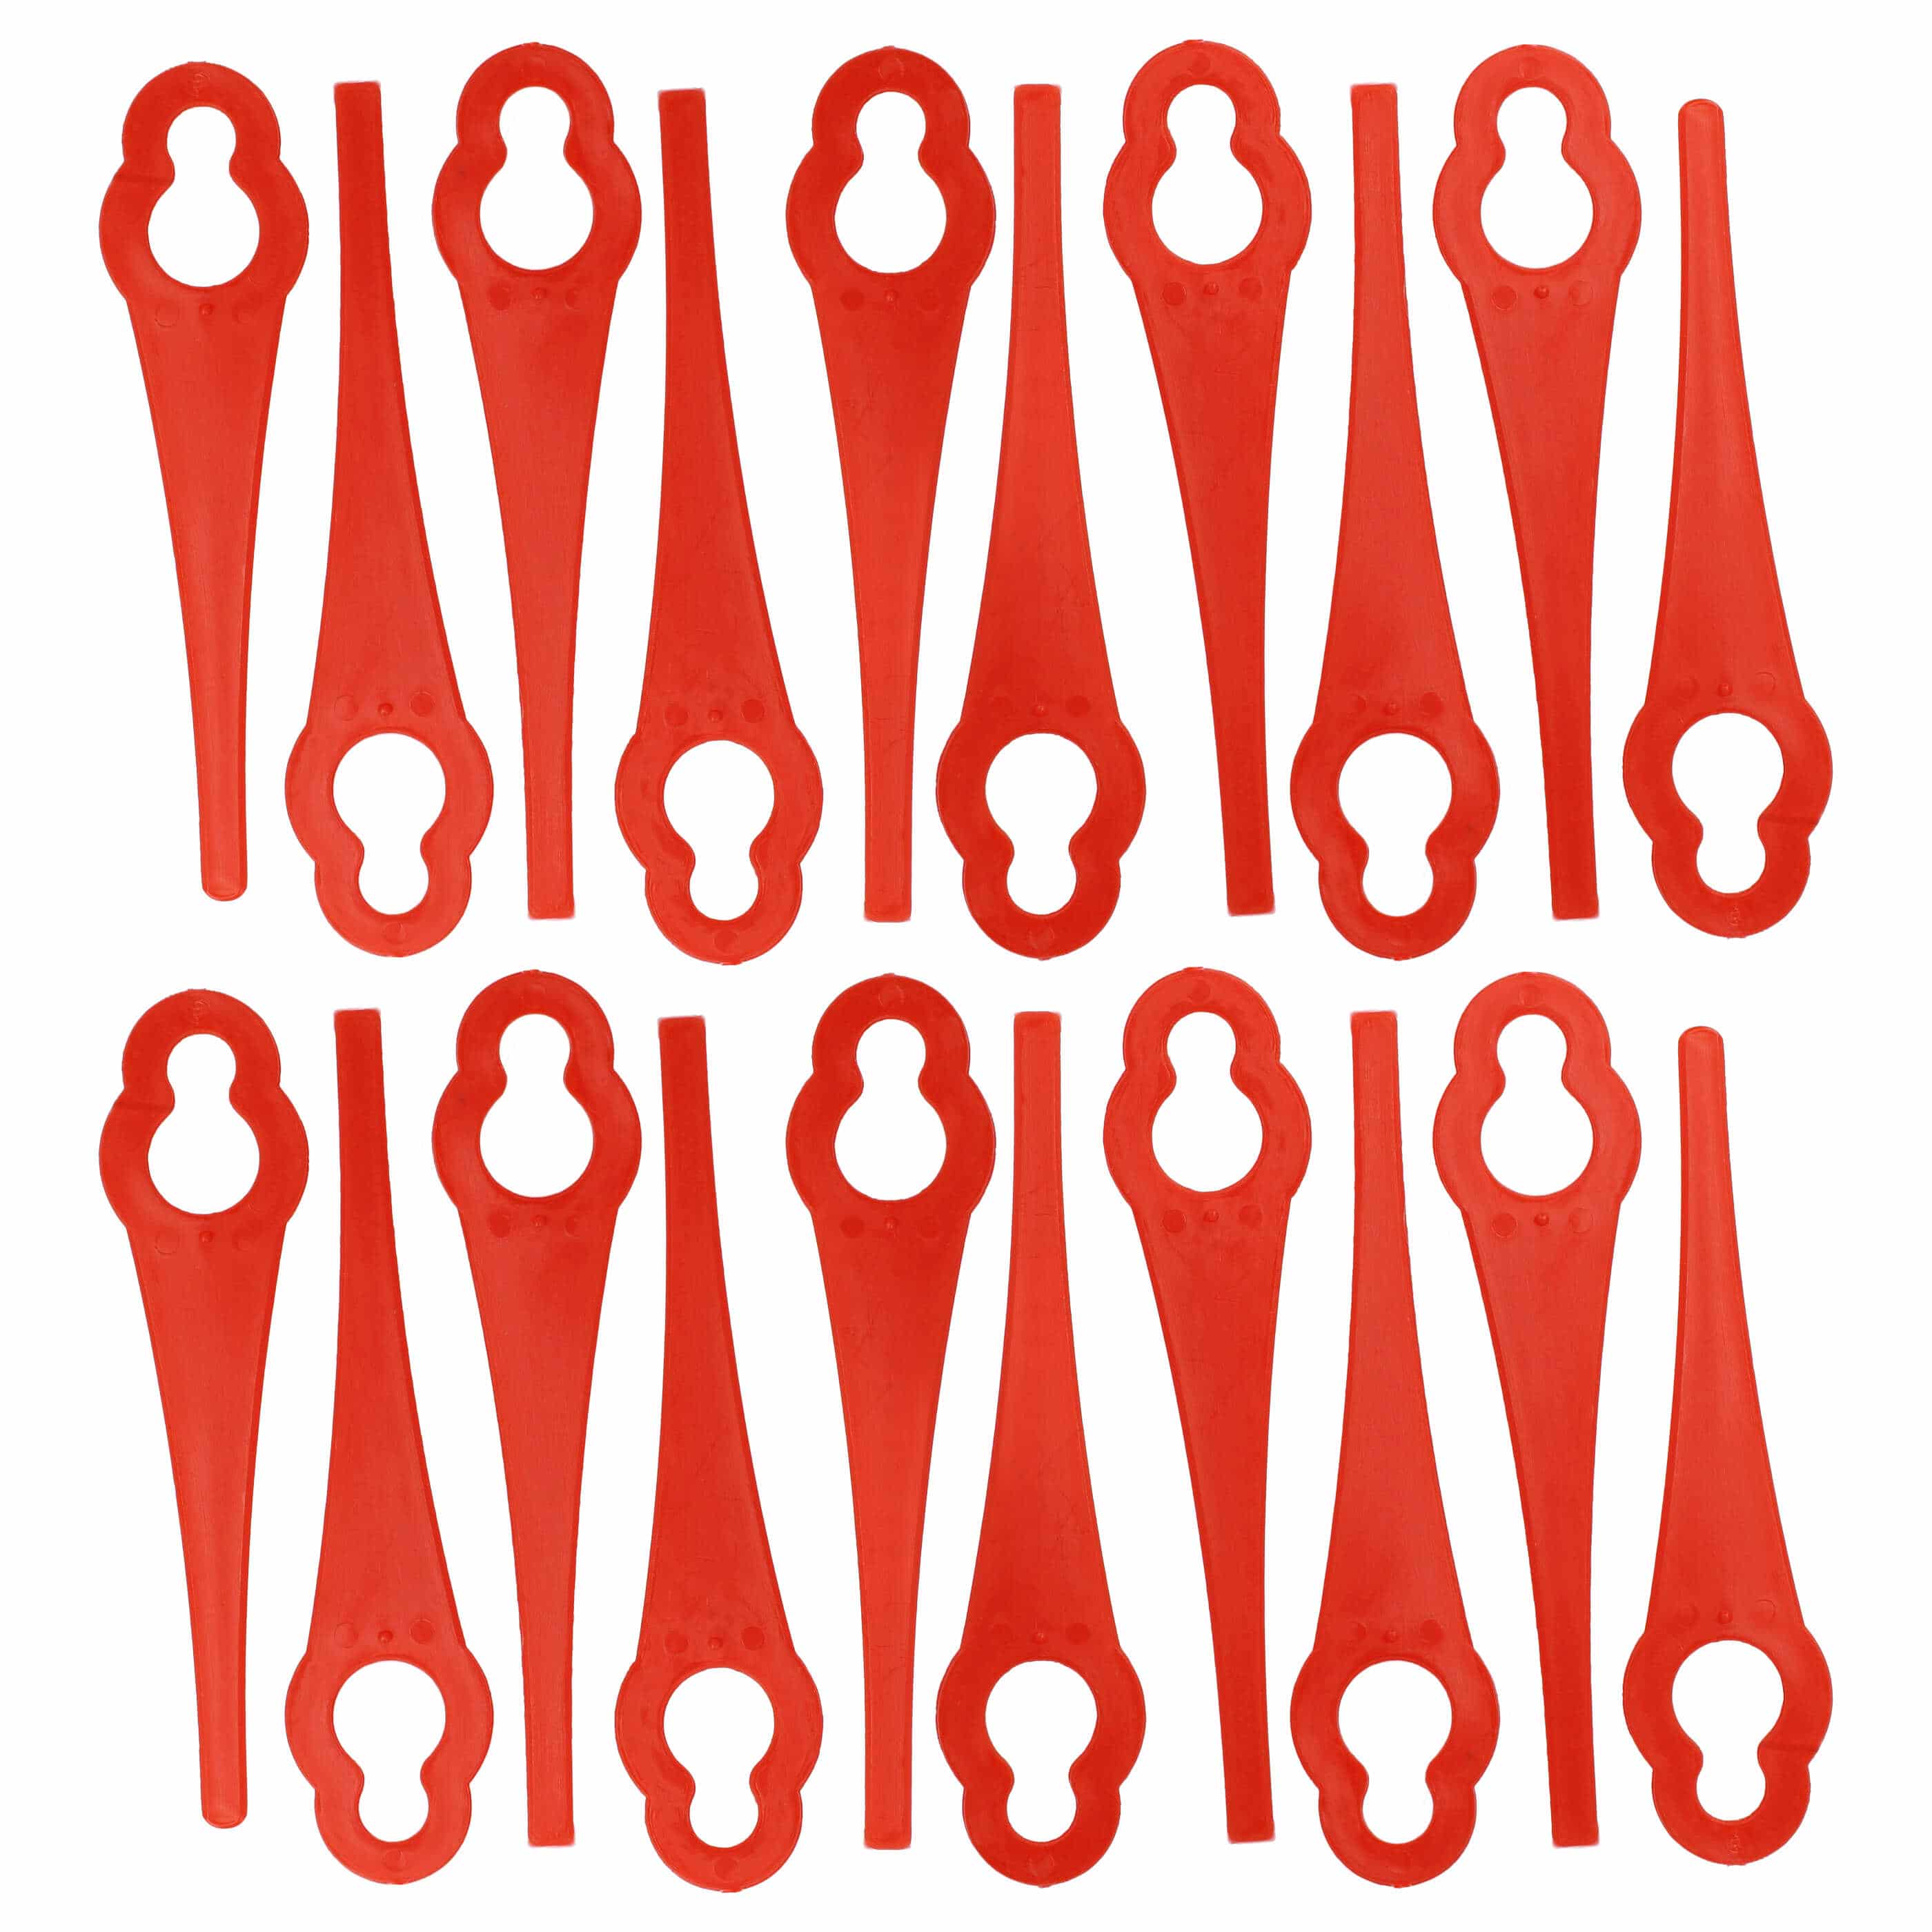 20x Nożyki do podkaszarki Bosch zam. ALM BQ026 - nylon / plastik, czerwony